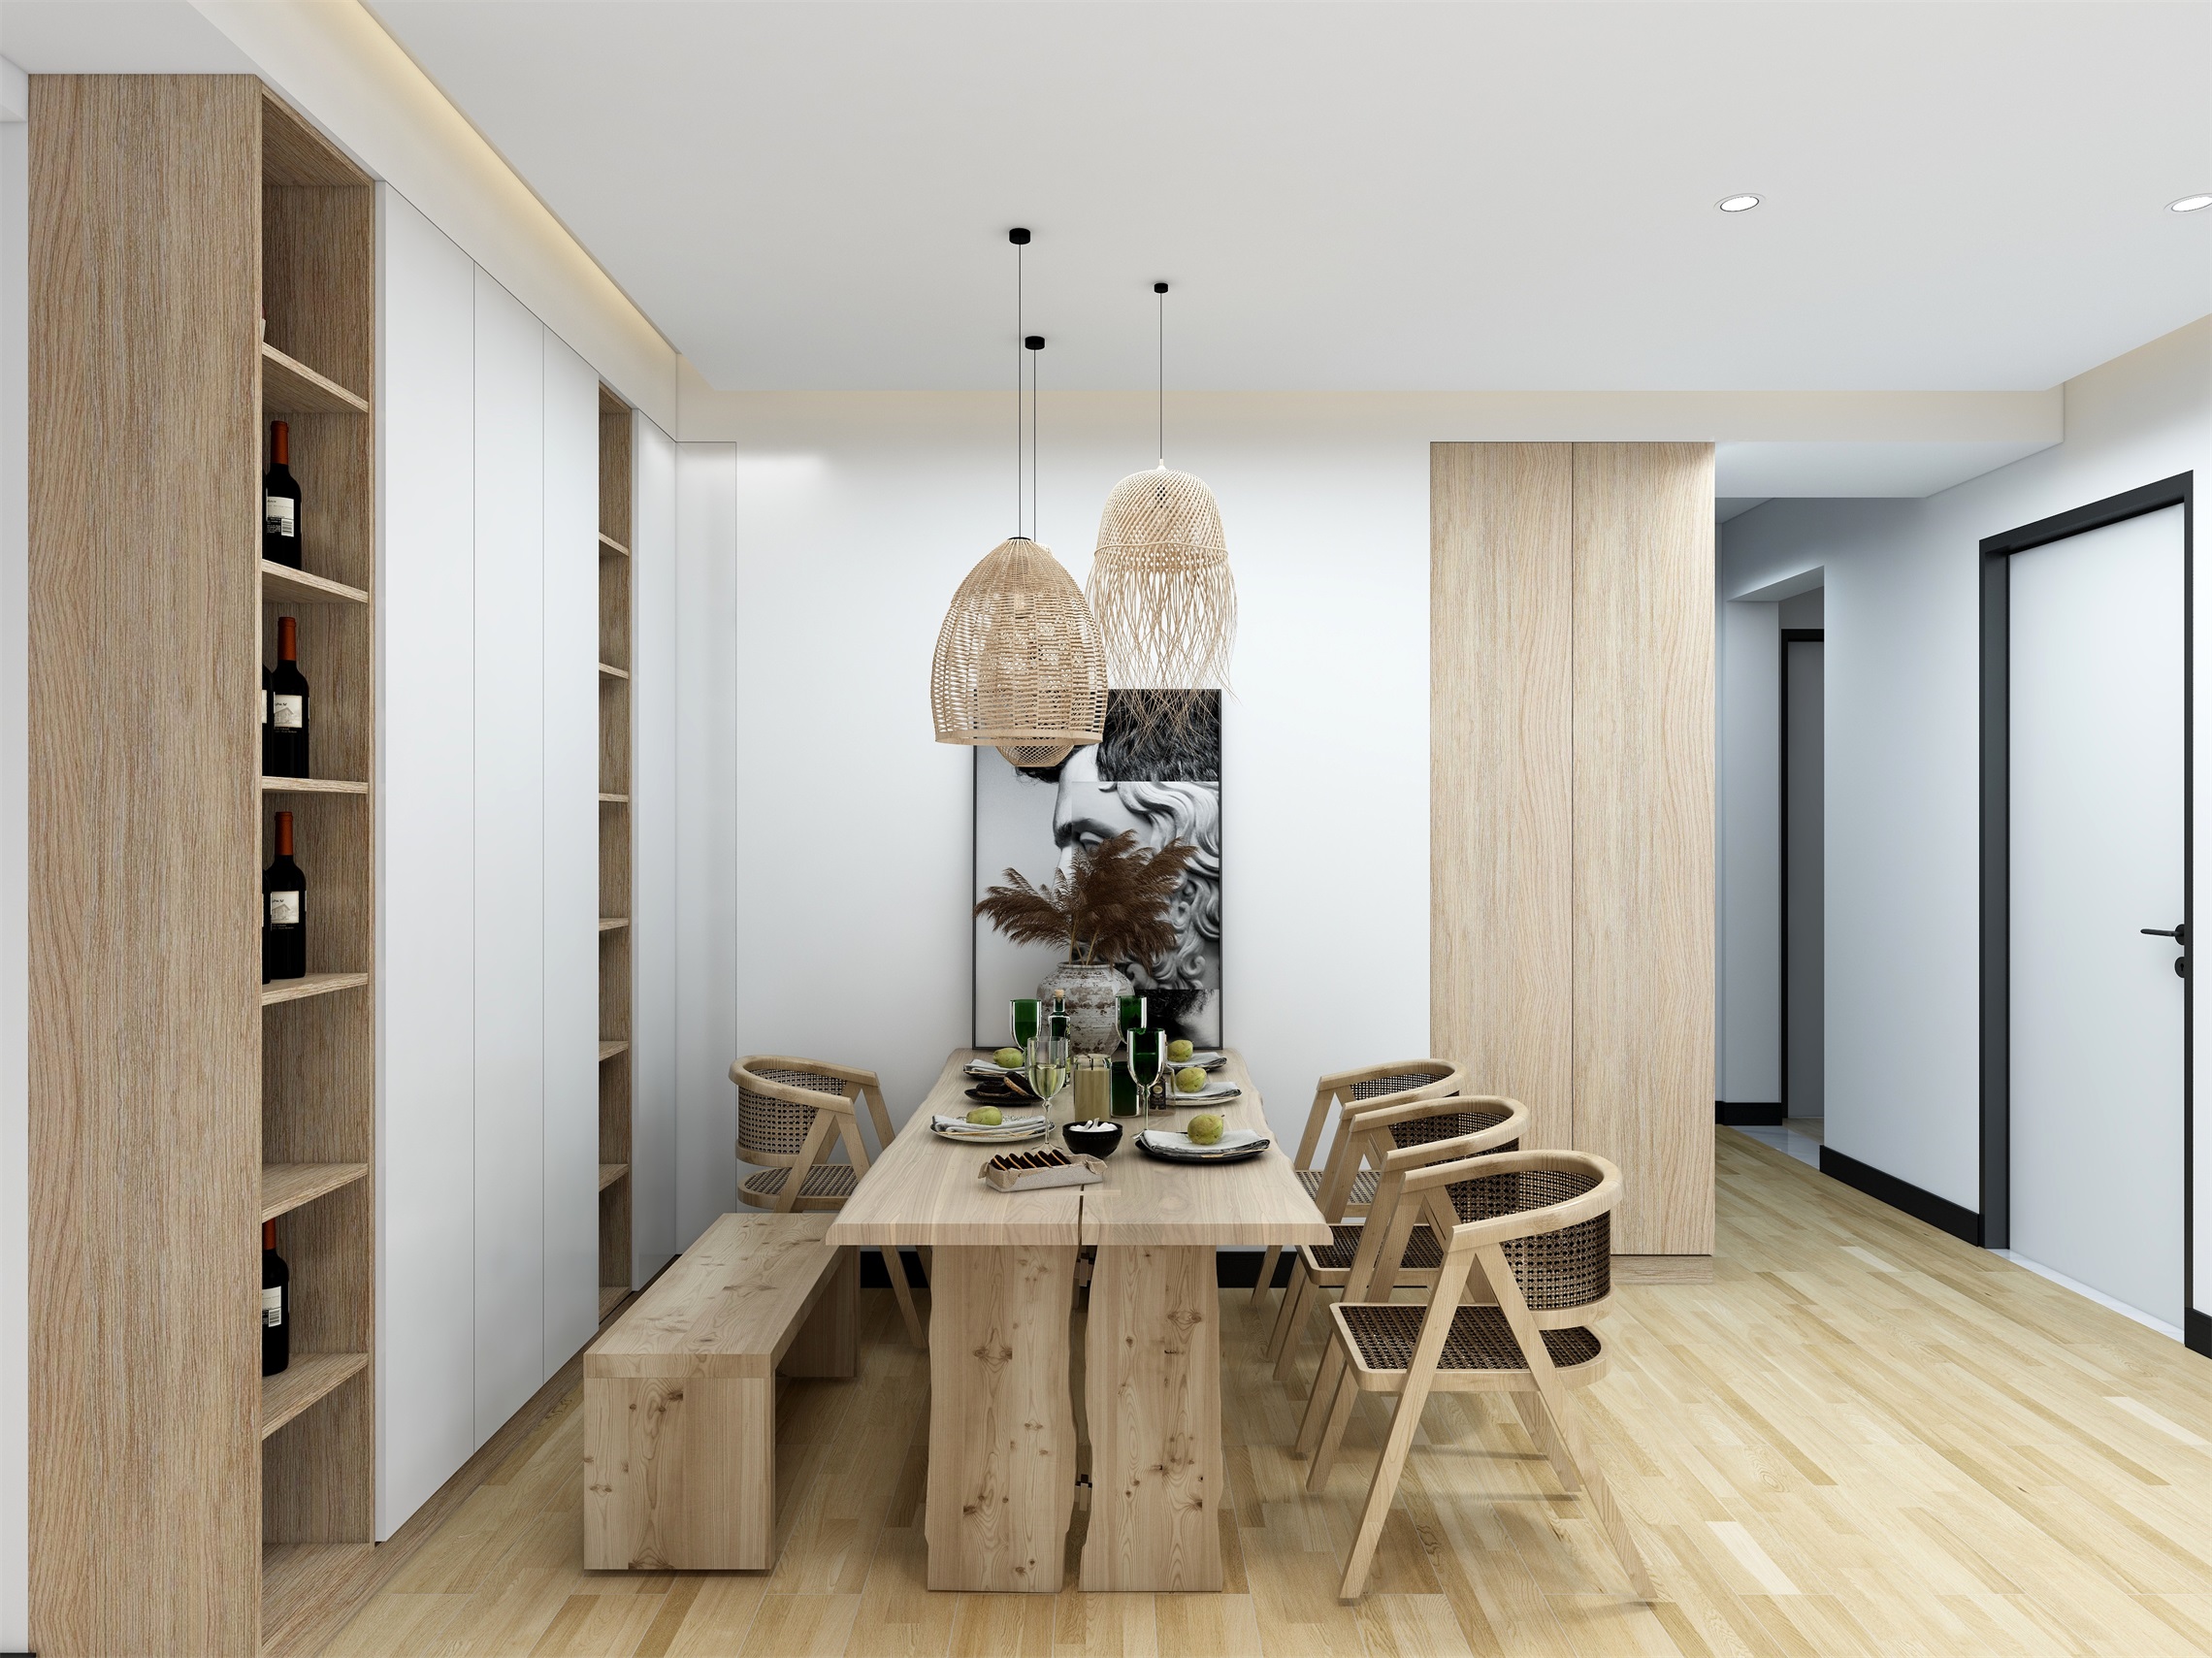 餐厅与客厅连贯打通，整个空间采用木色与白色结合的方式设计，显得更加温馨舒适。